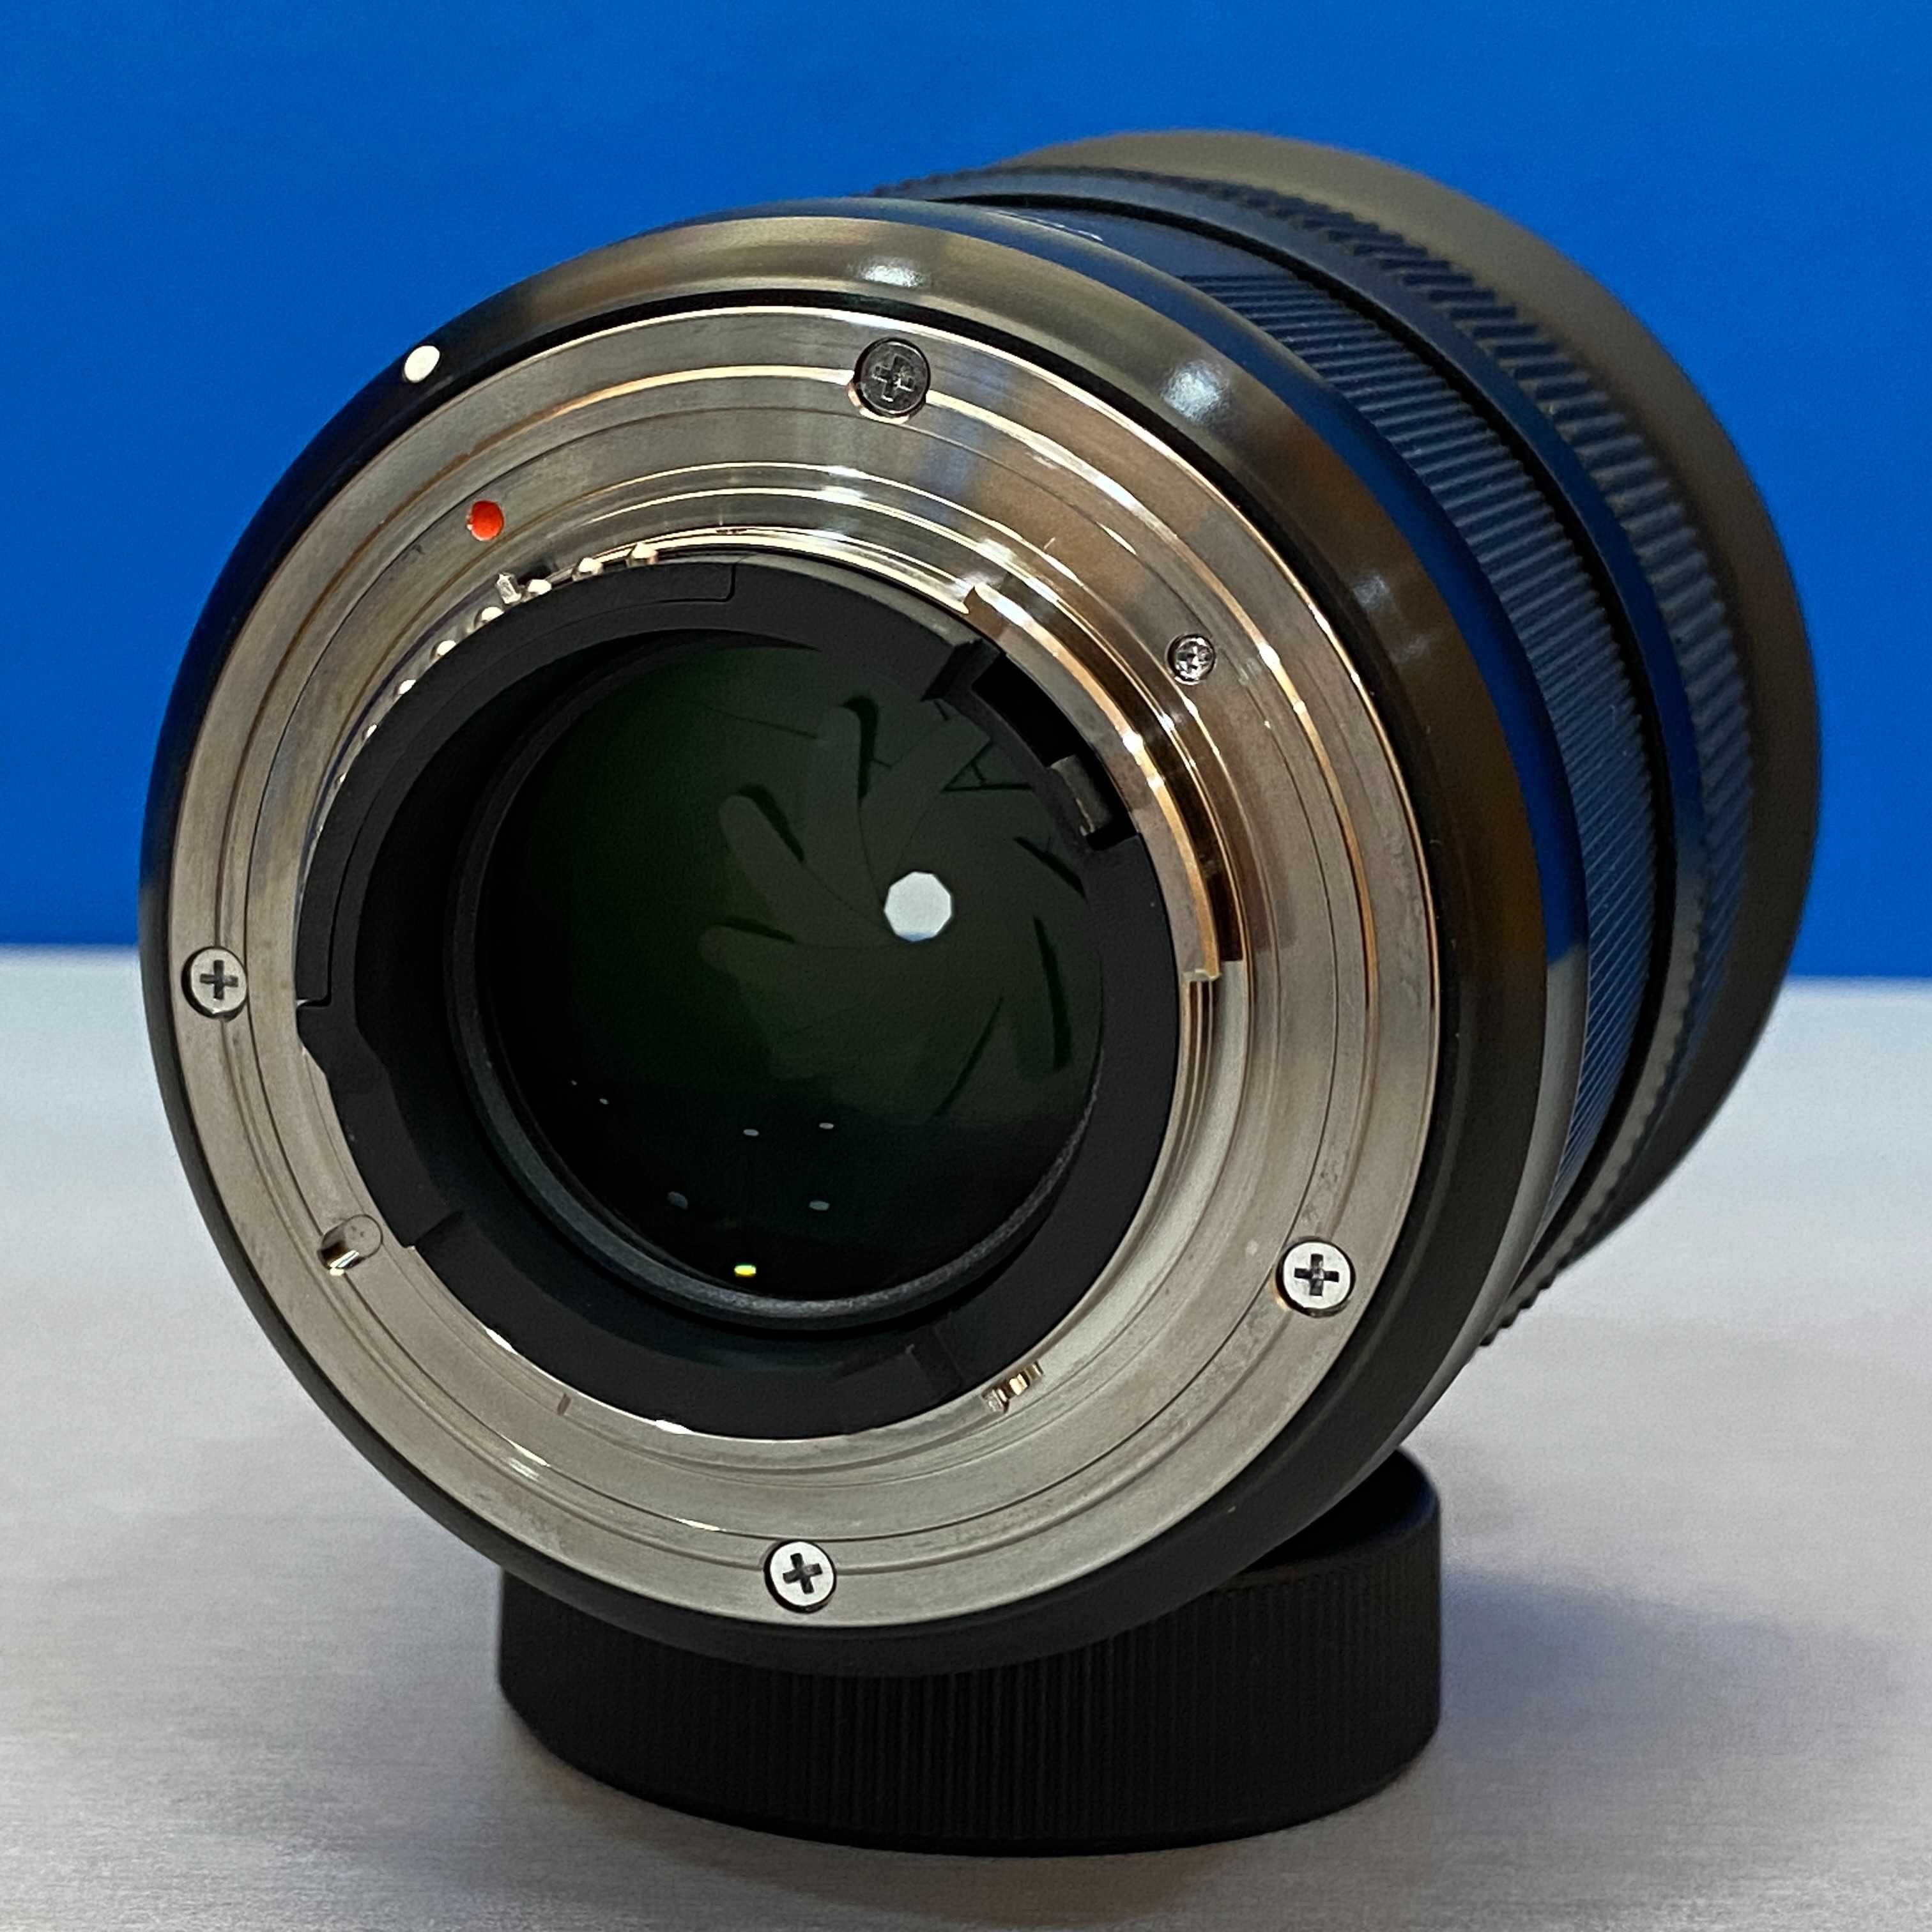 Sigma ART 50mm f/1.4 DG HSM (Nikon)